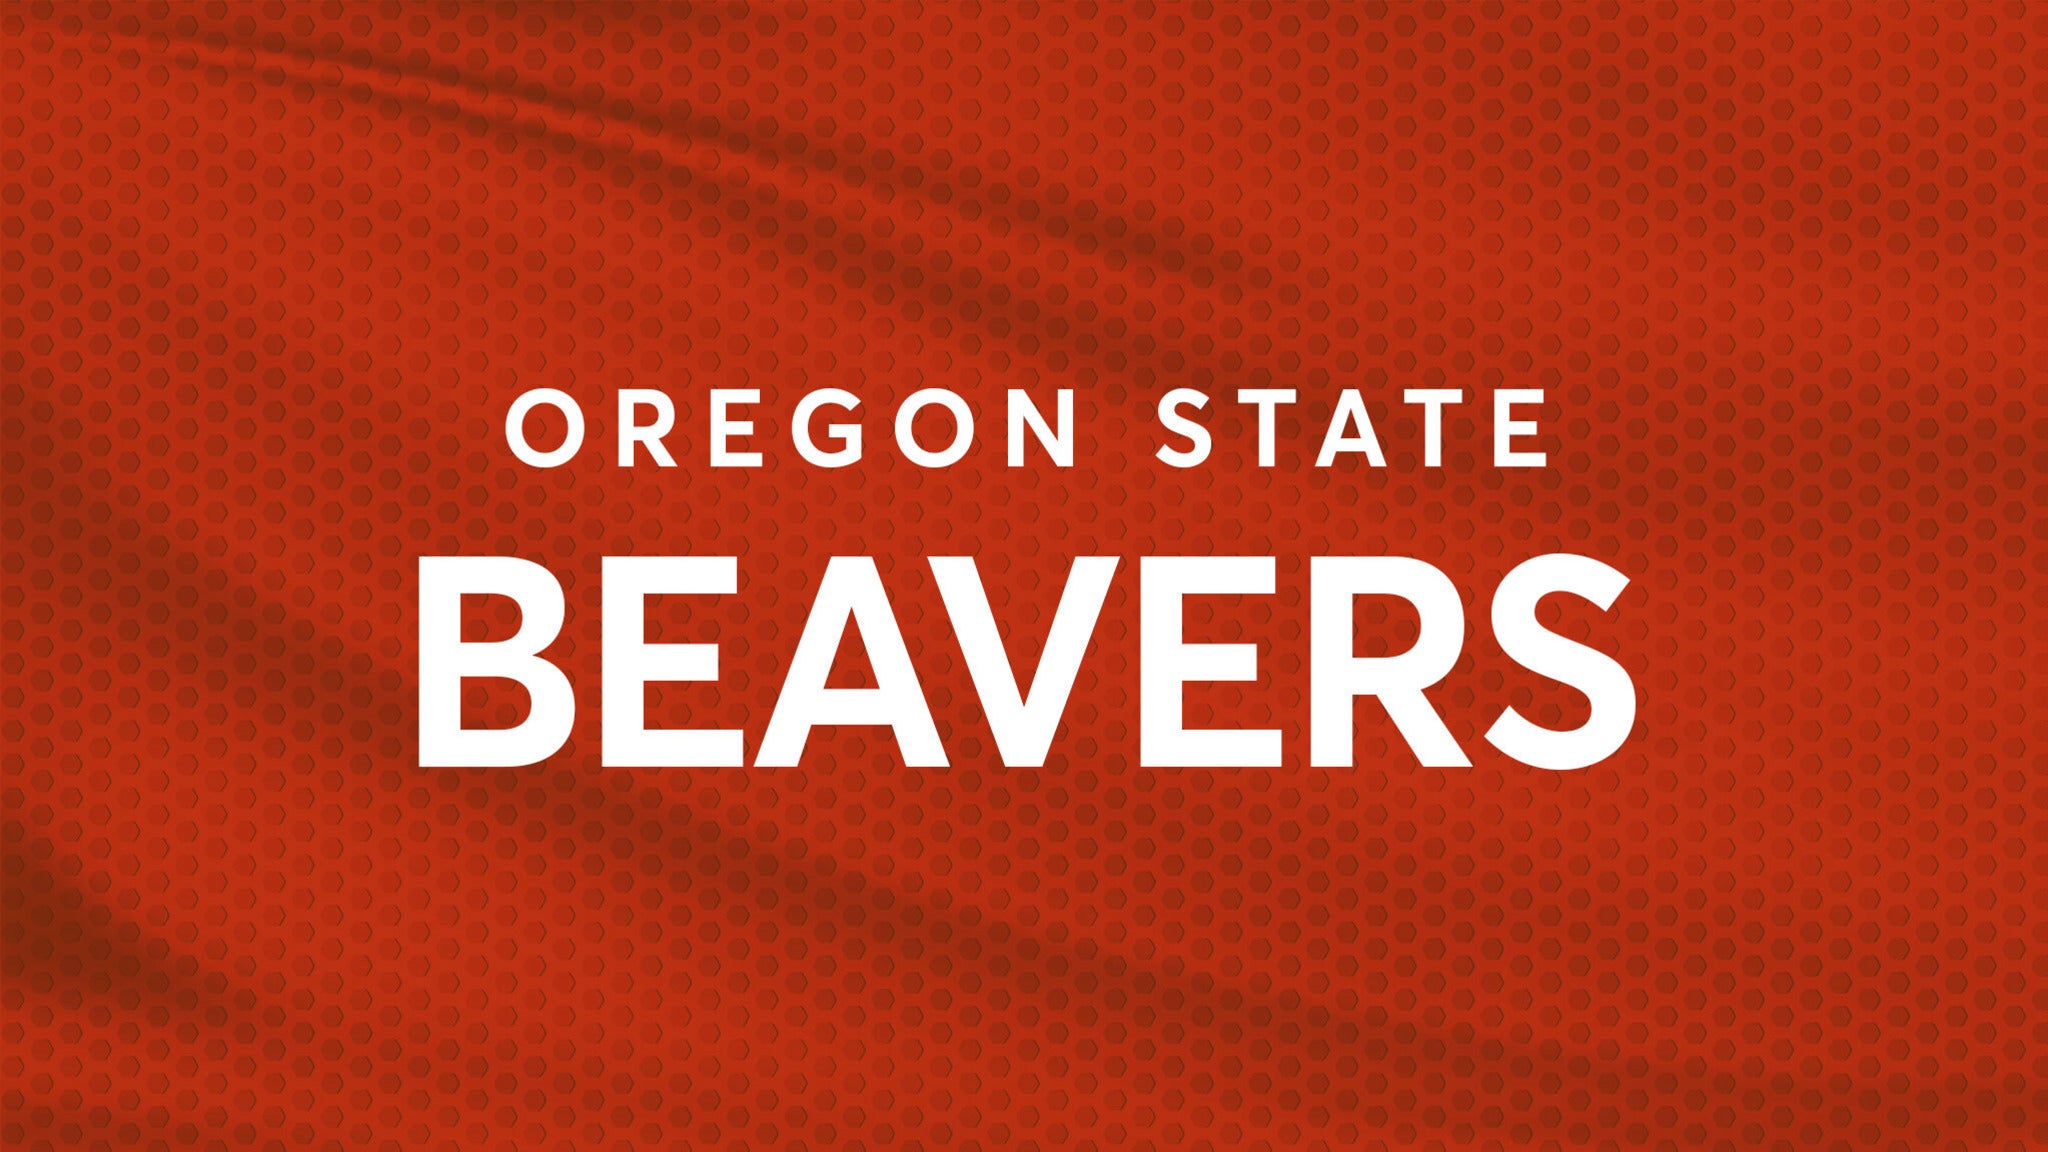 Oregon State Beavers Wrestling presale information on freepresalepasswords.com